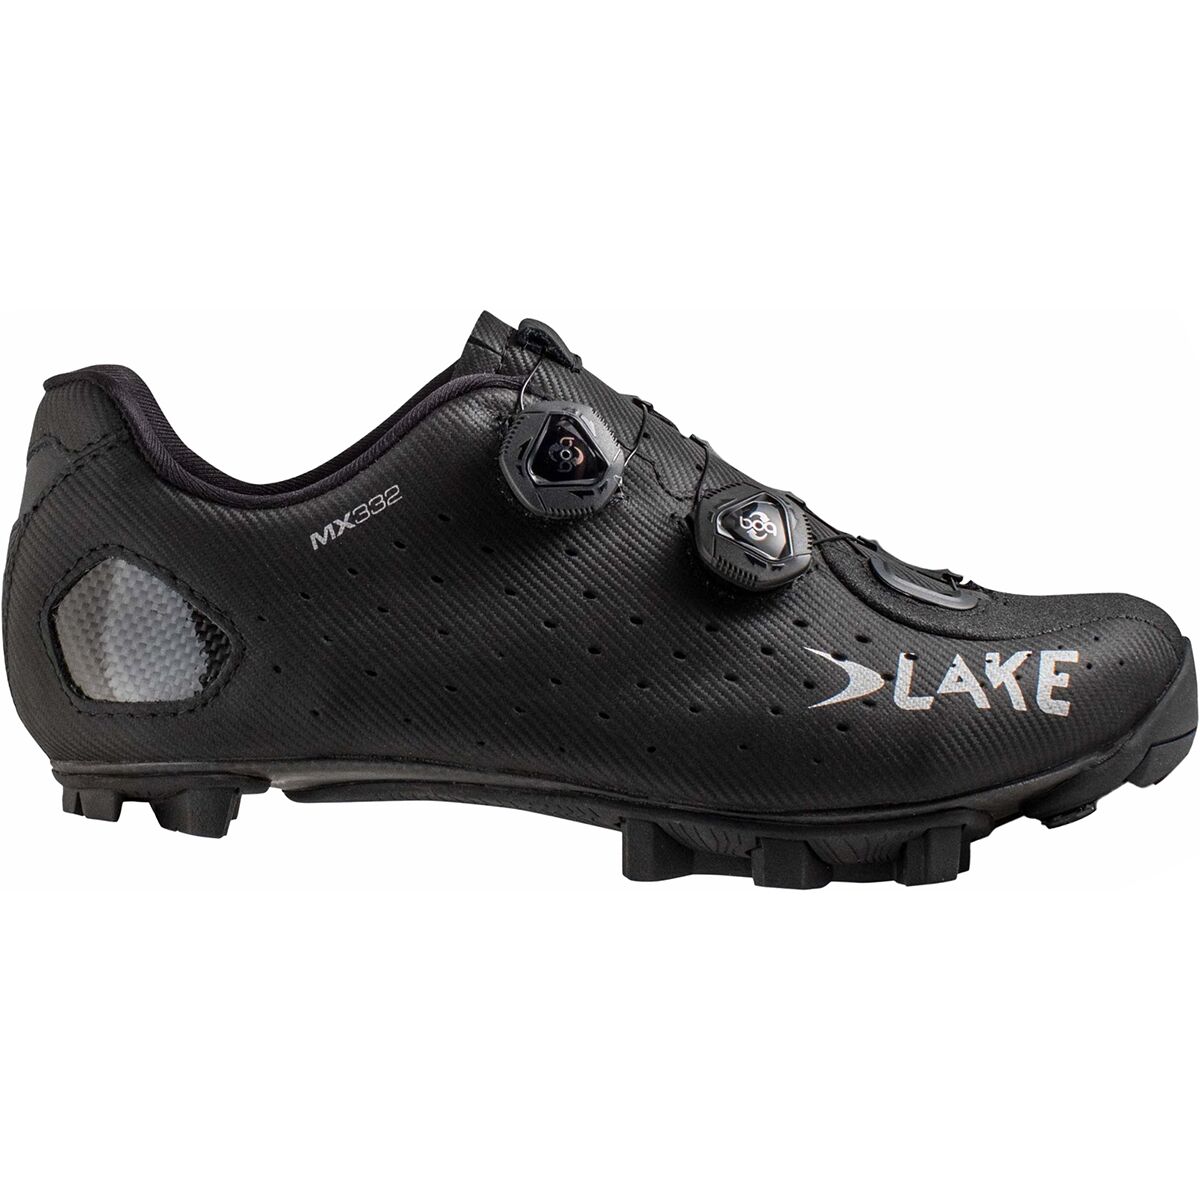 Lake MX332 Cycling Shoe - Women's Black/Silver, 39.0